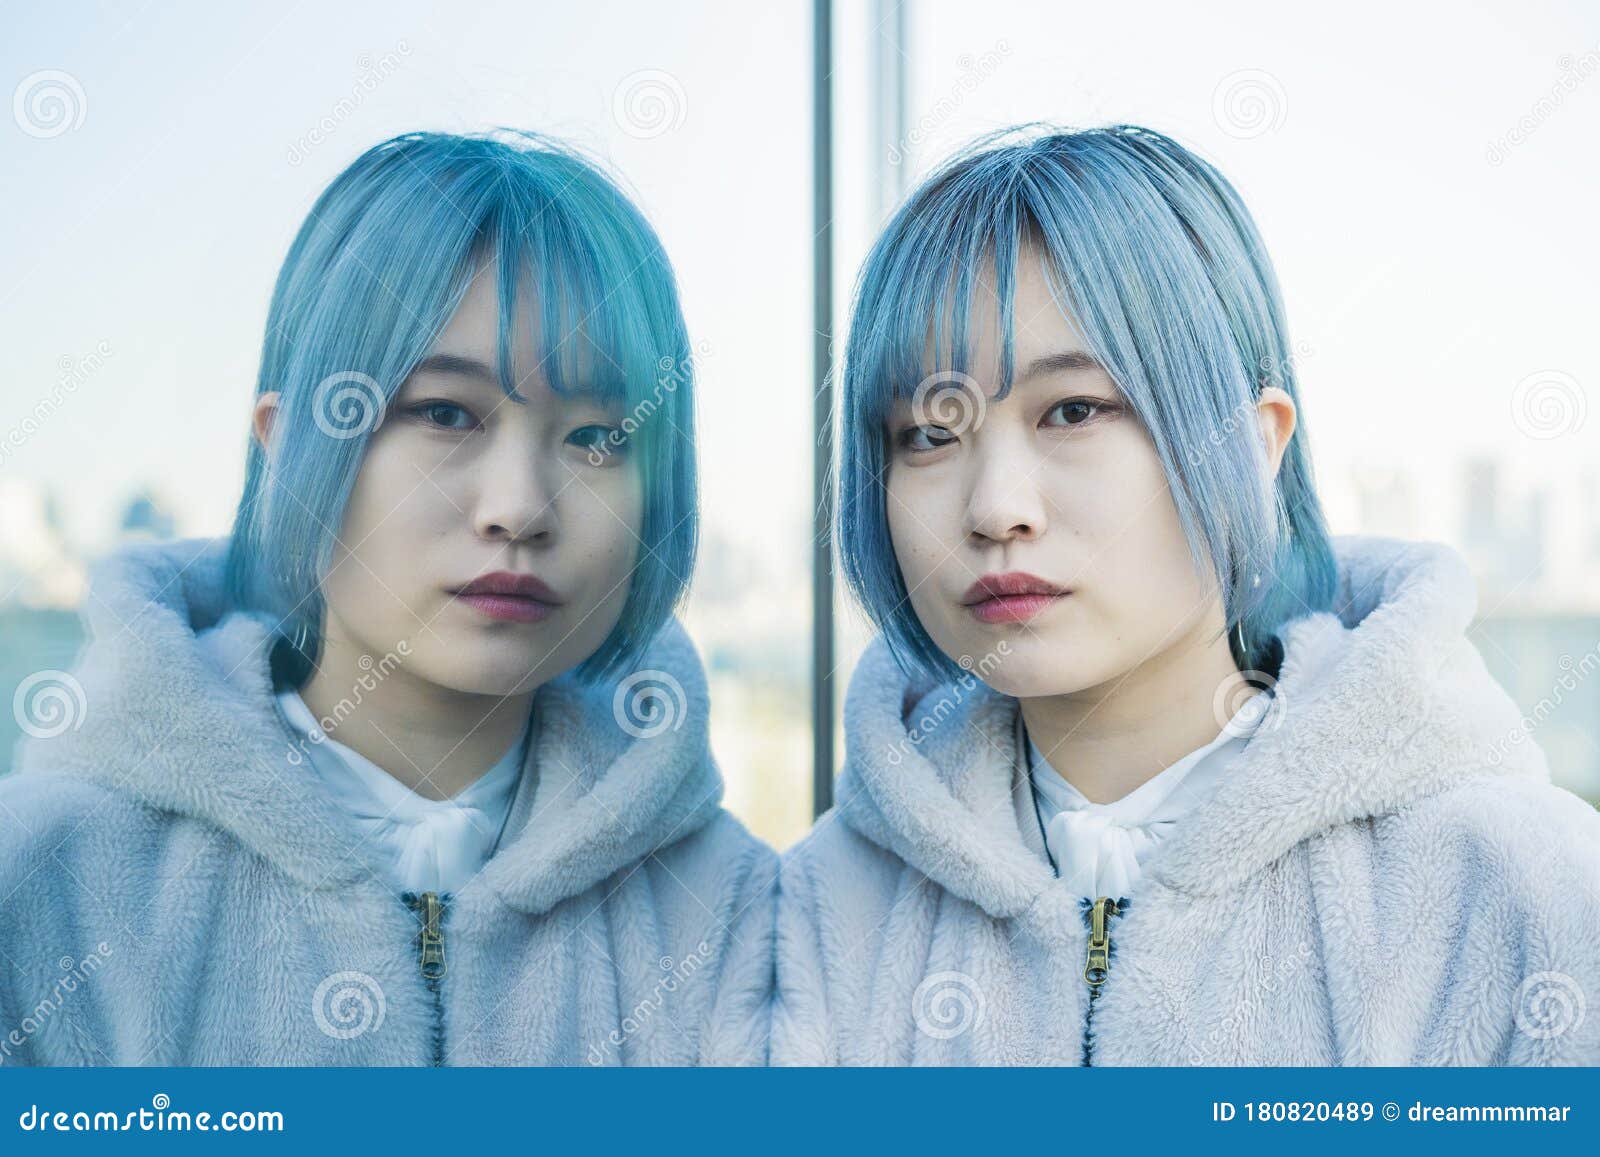 Blue Hair Asian Urban - wide 5